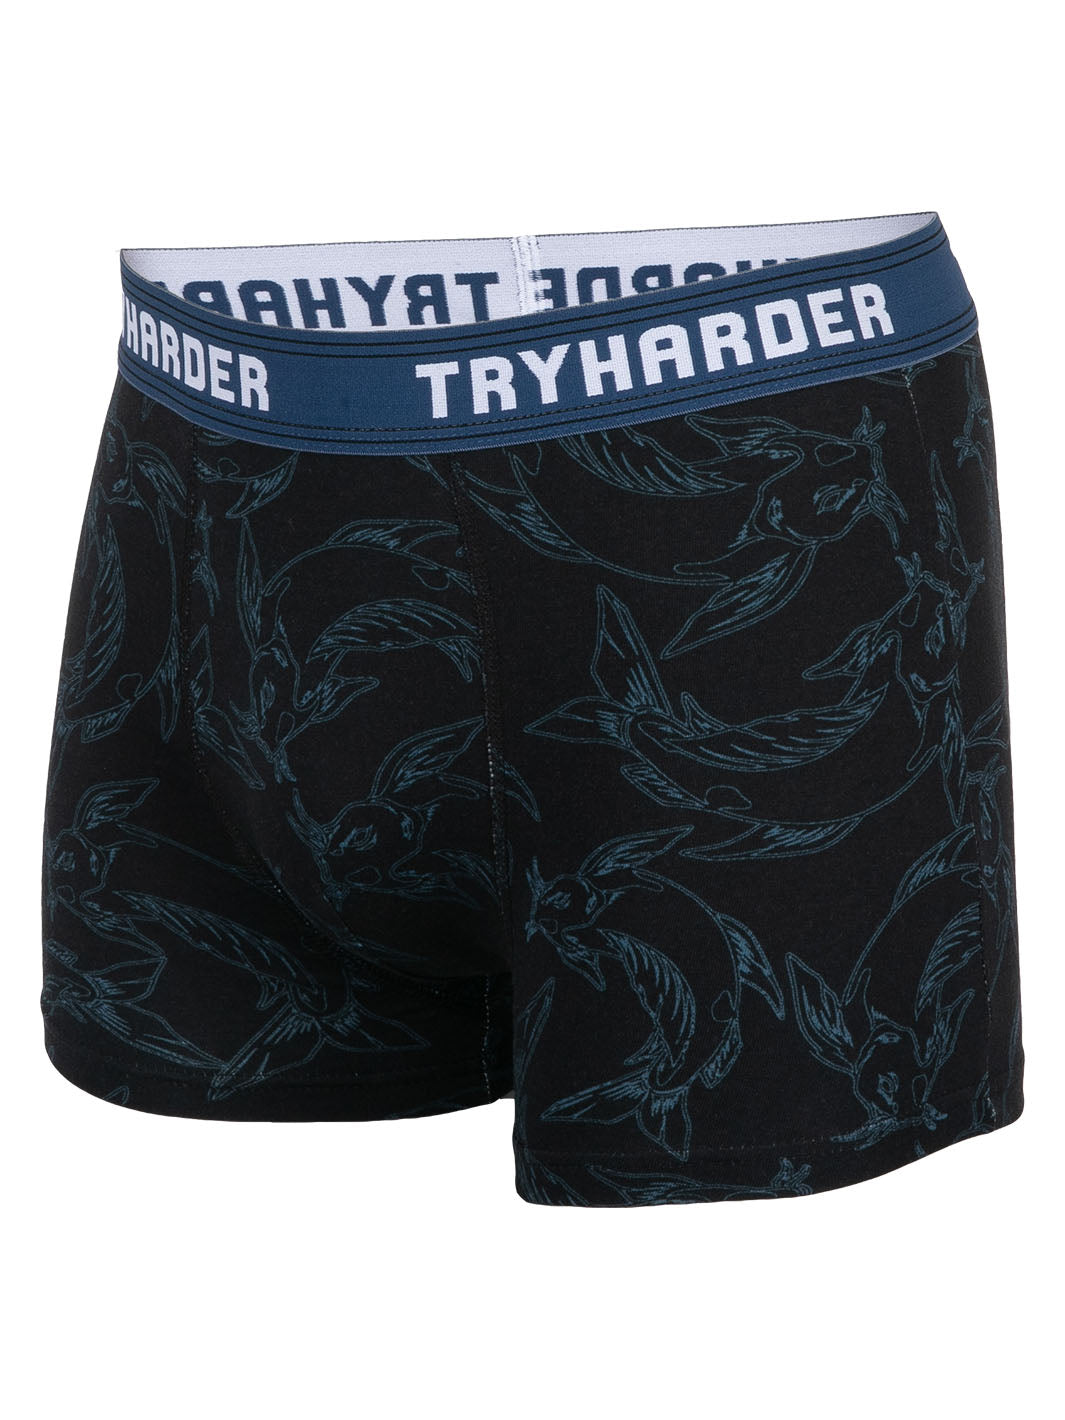 TRYHARDER - Boxer - Fisch Navy 1 Pack